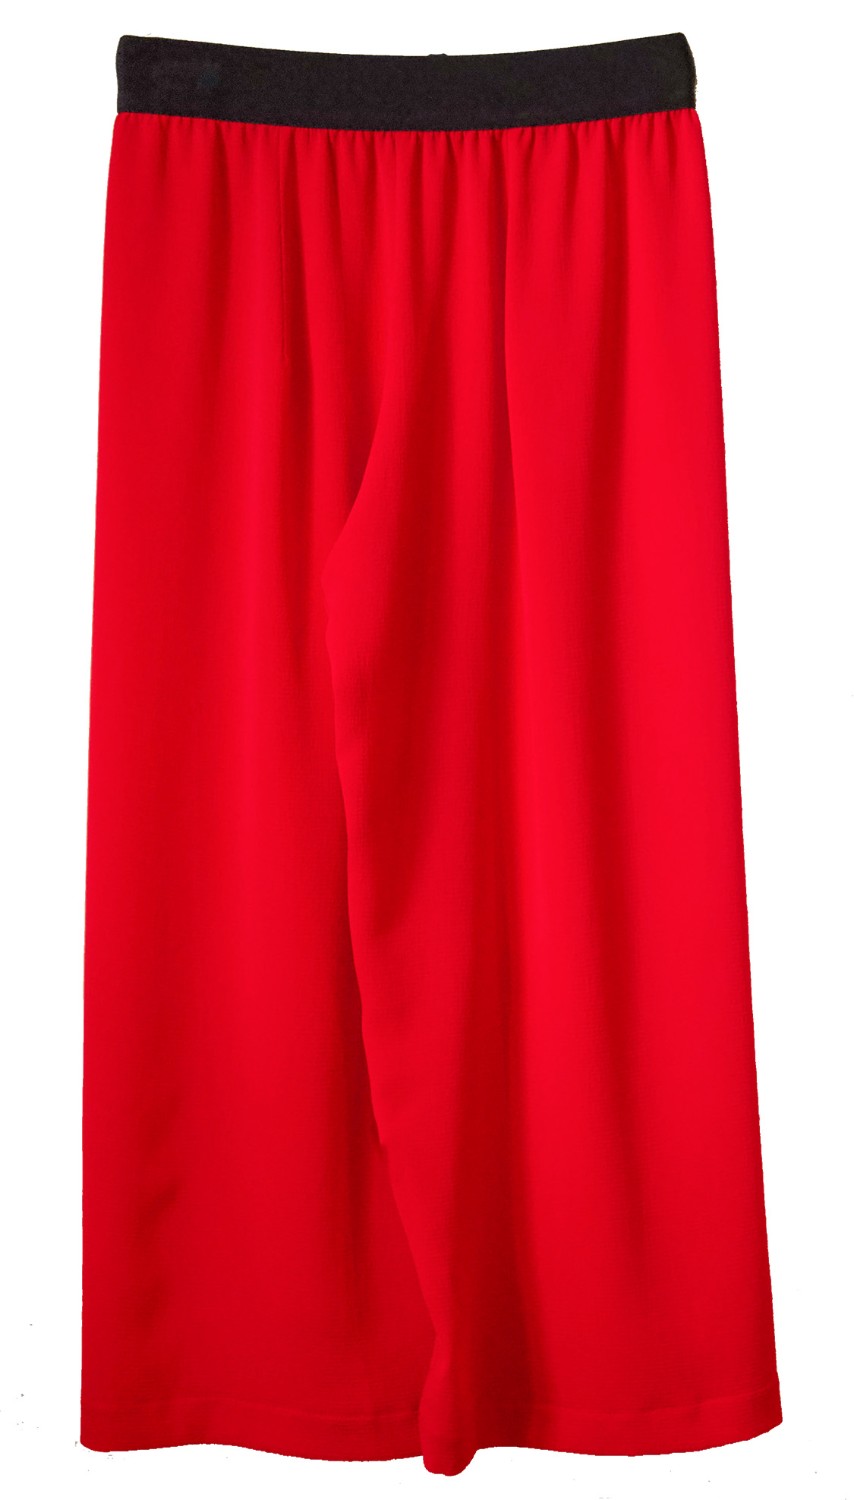 shop Maria Calderara  Pantaloni: Pantalone Maria Calderara, elastico nero in vita, color rosso, lunghezza alle caviglie.

Composizione: 100% poliestere. number 1233